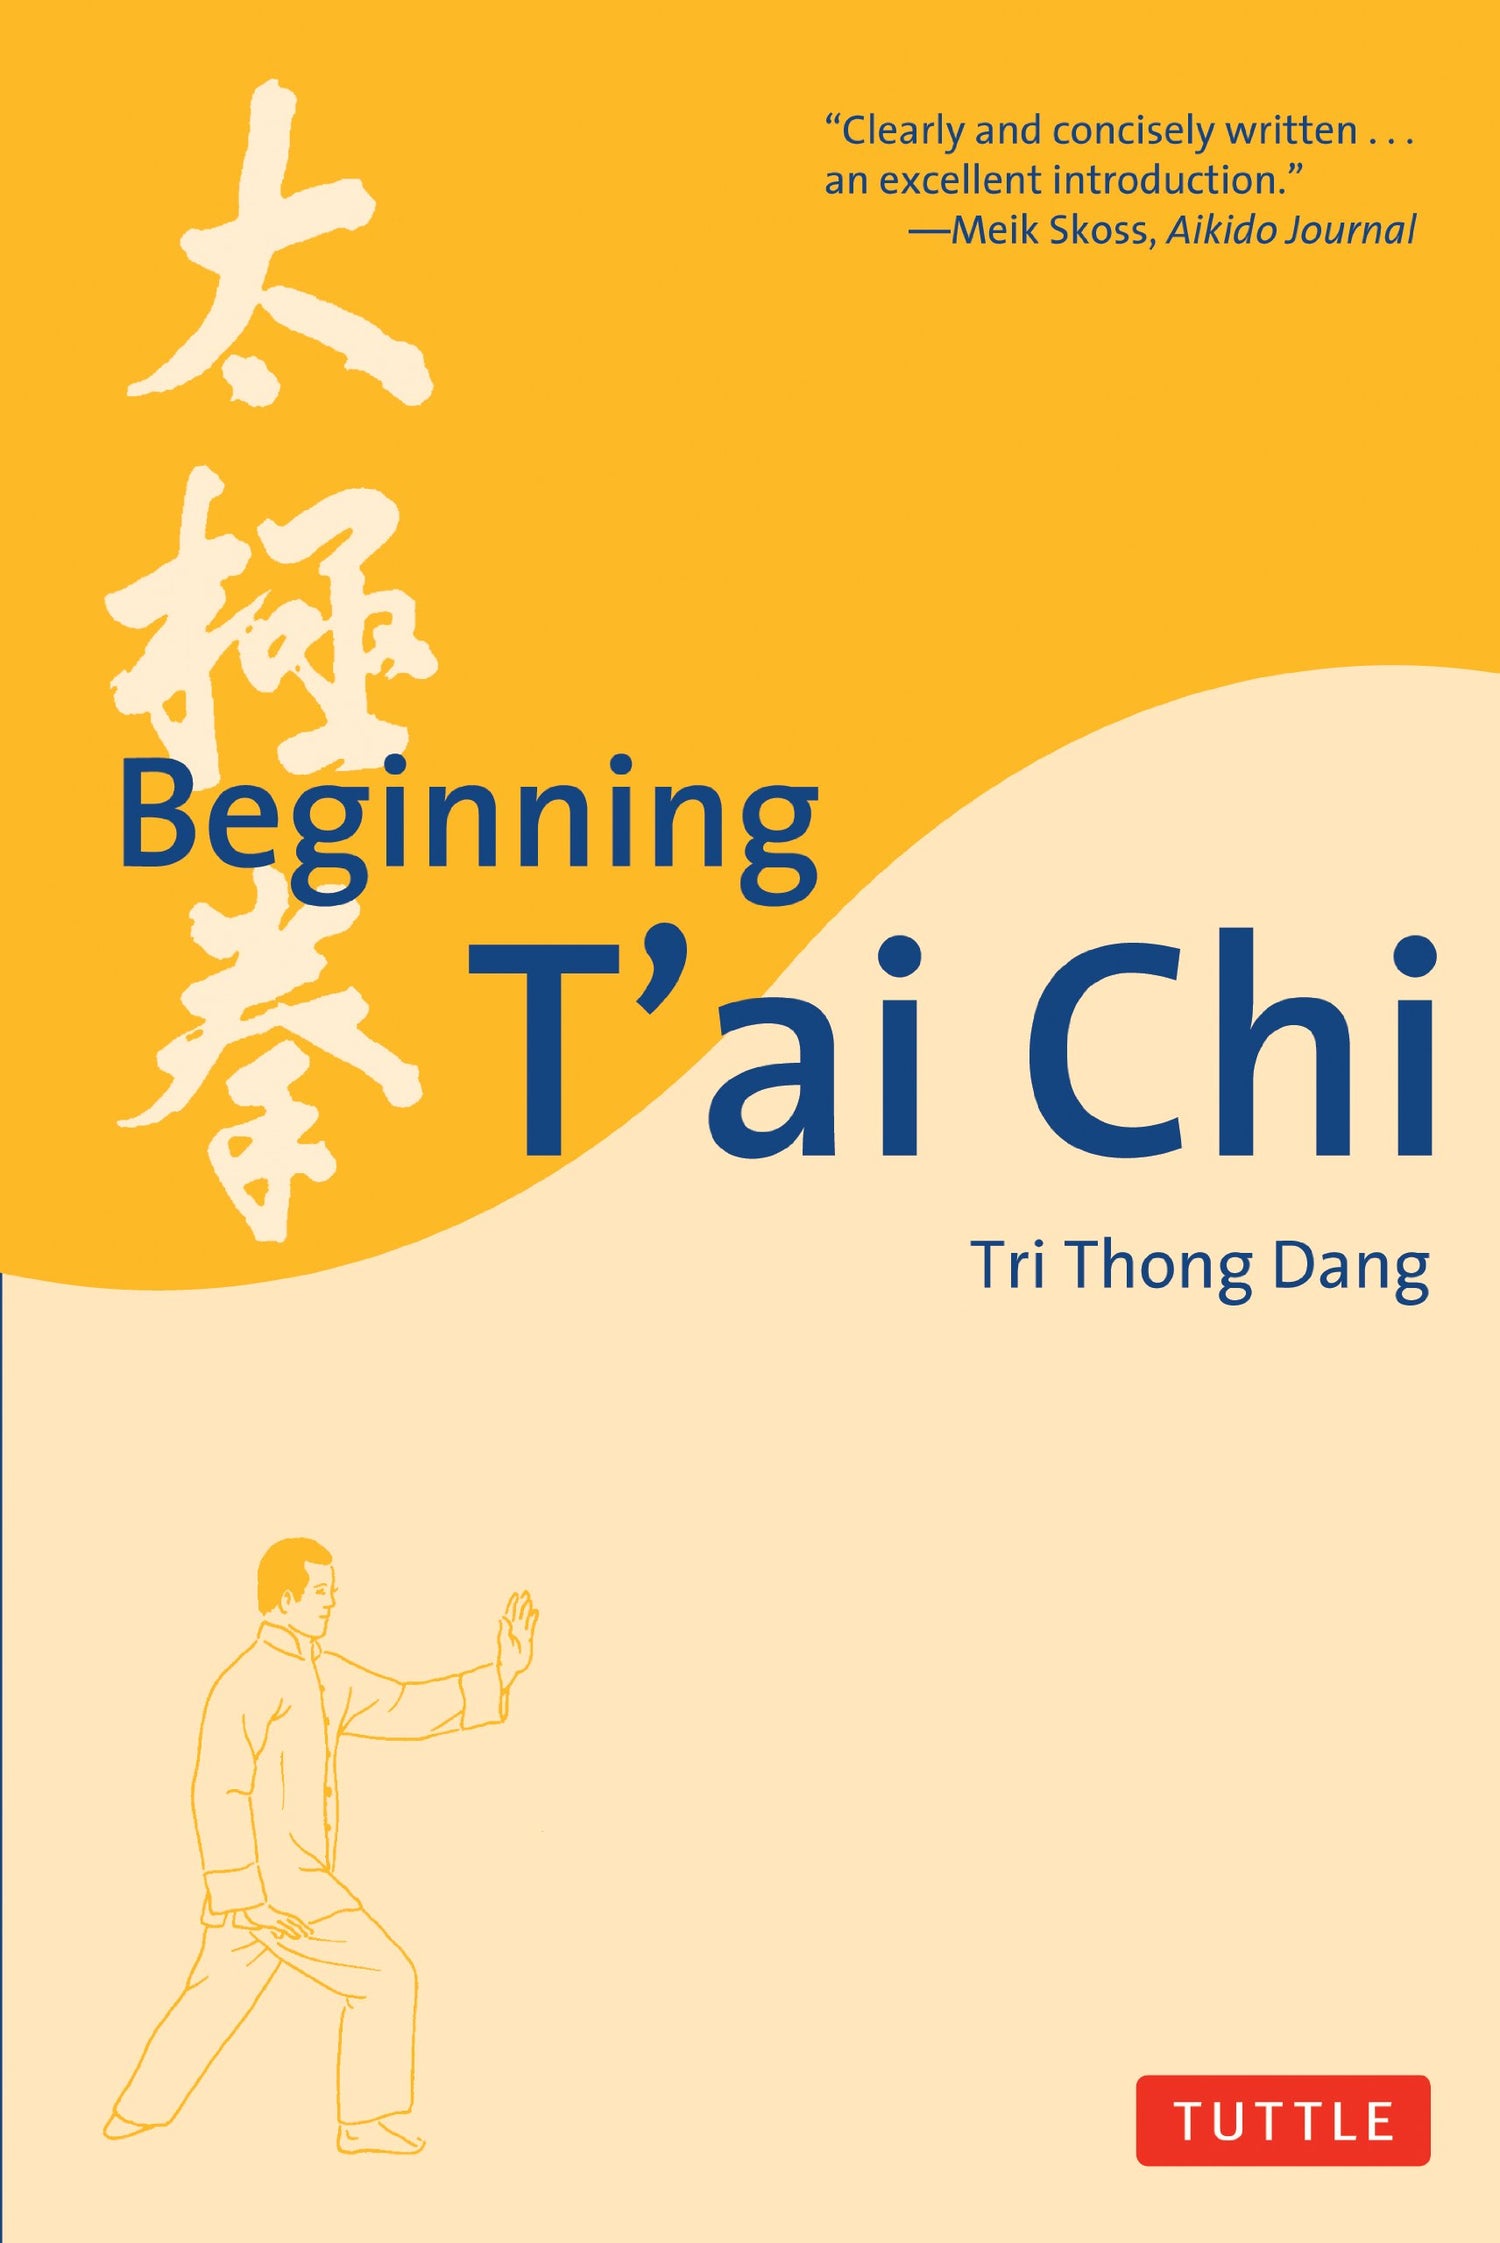 Libro para principiantes de Tai Chi de Tri Thong Dang (usado)